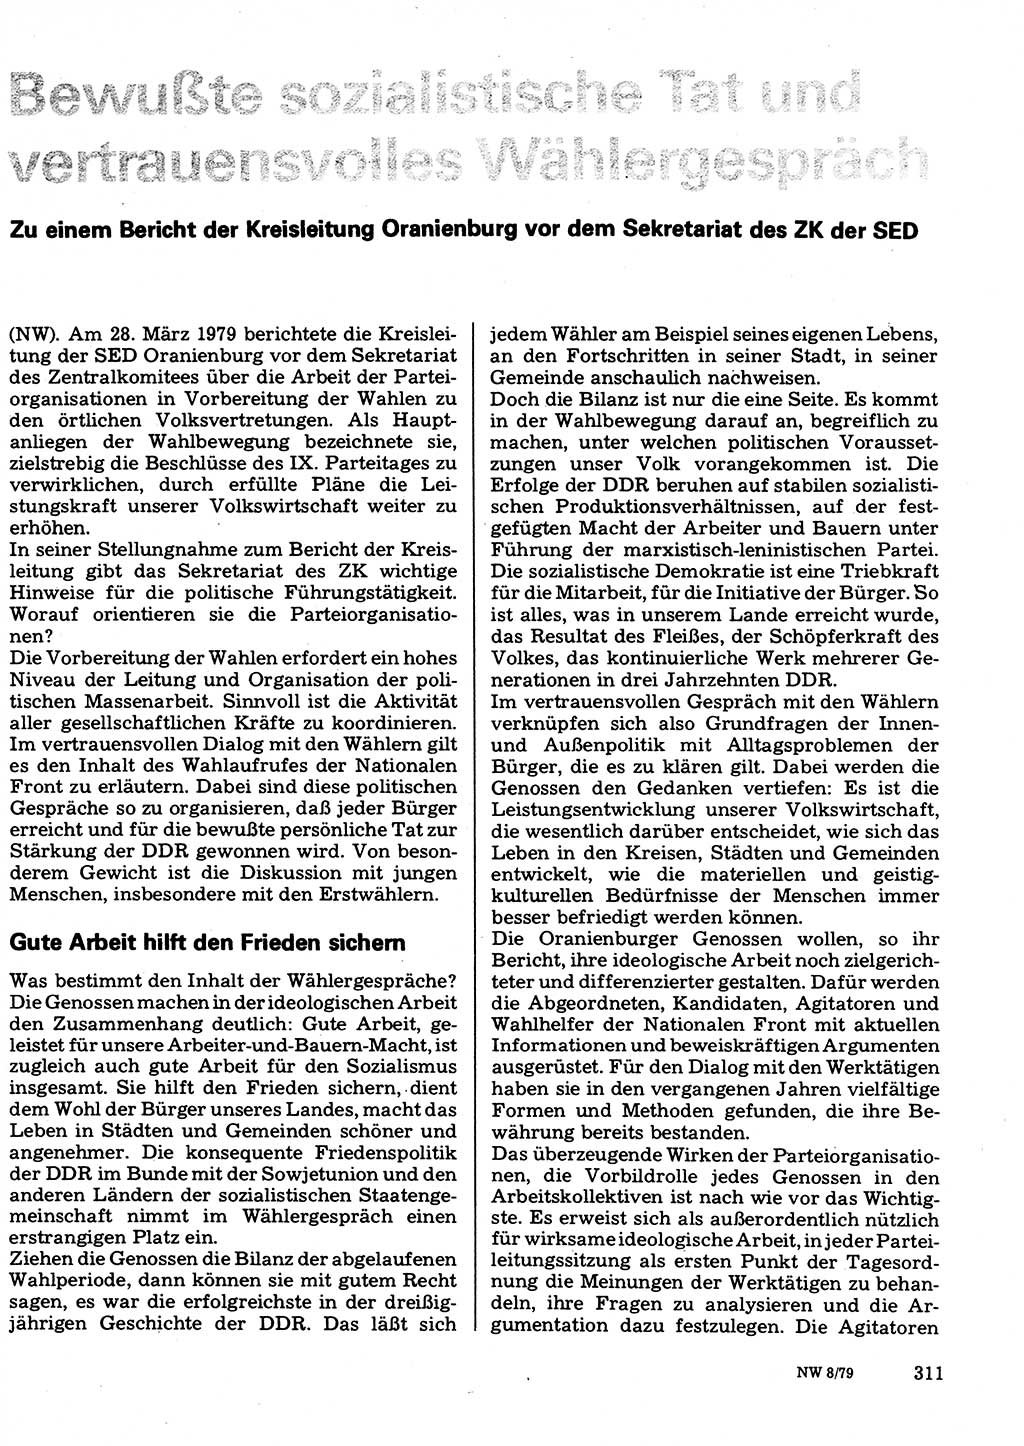 Neuer Weg (NW), Organ des Zentralkomitees (ZK) der SED (Sozialistische Einheitspartei Deutschlands) für Fragen des Parteilebens, 34. Jahrgang [Deutsche Demokratische Republik (DDR)] 1979, Seite 311 (NW ZK SED DDR 1979, S. 311)